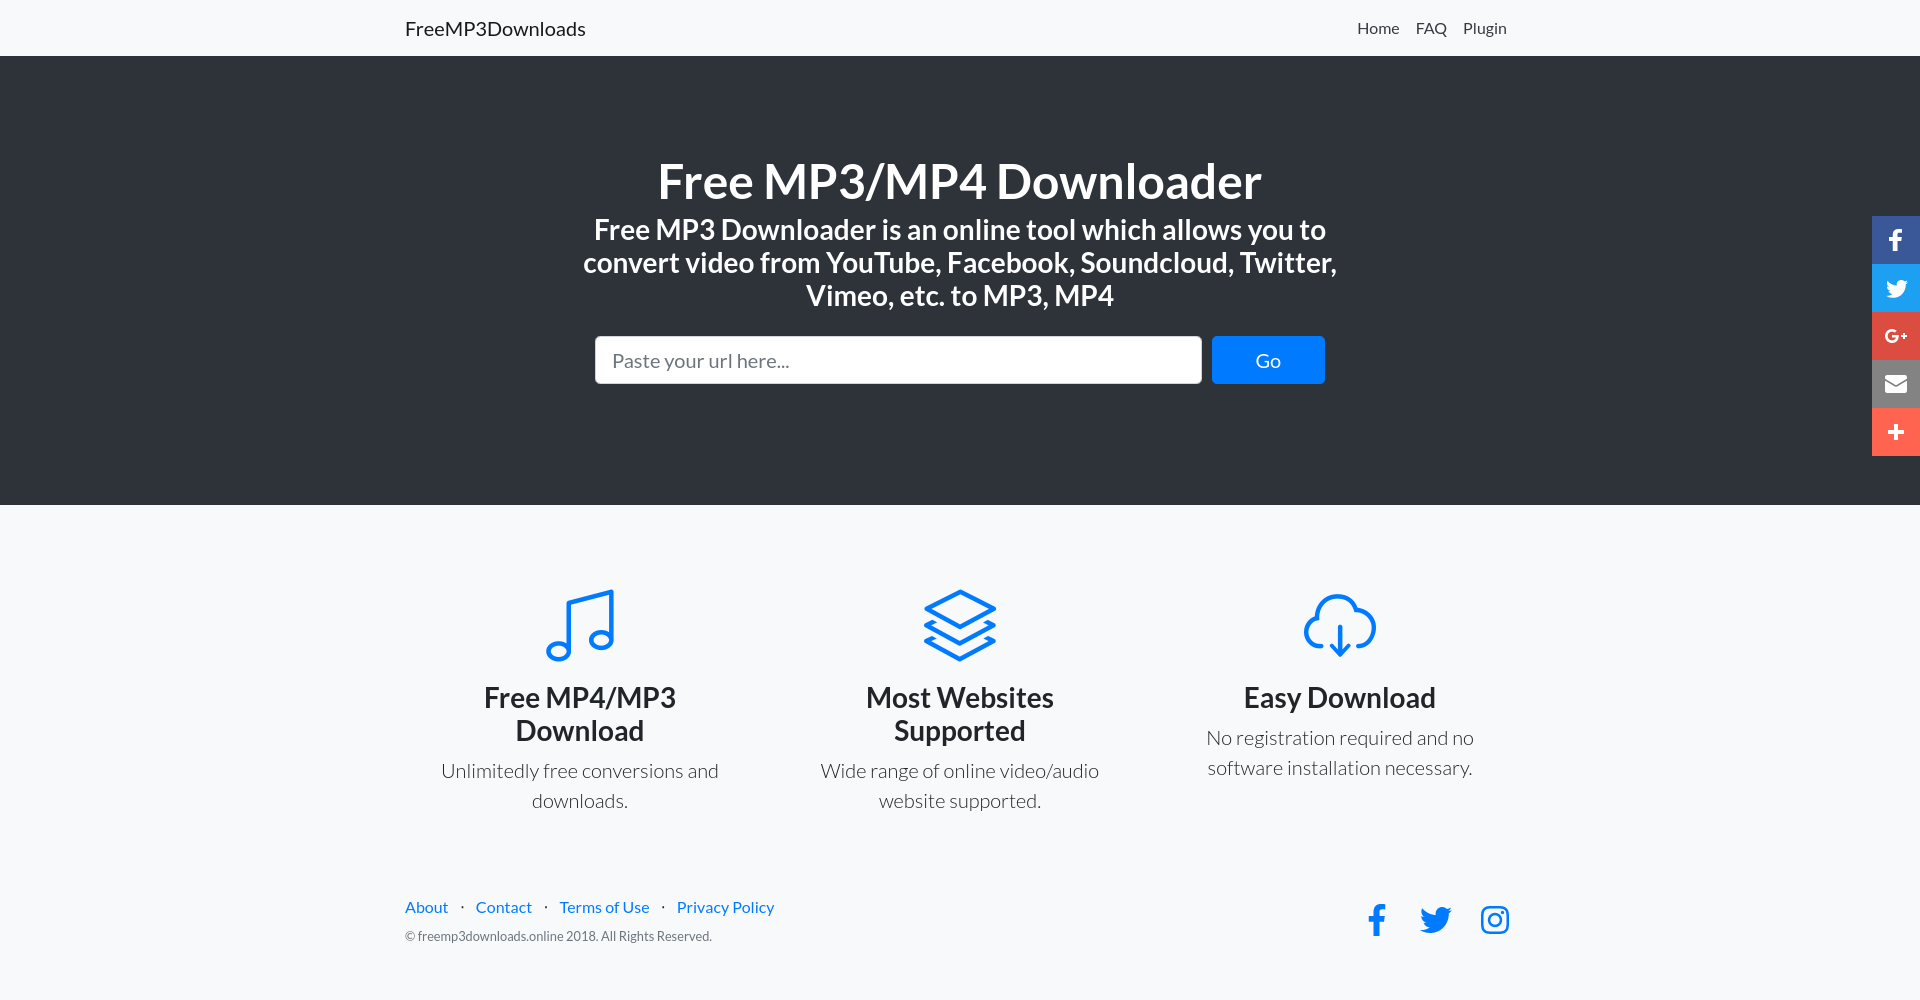 Best MP3 Downloader FreeMP3Downloads